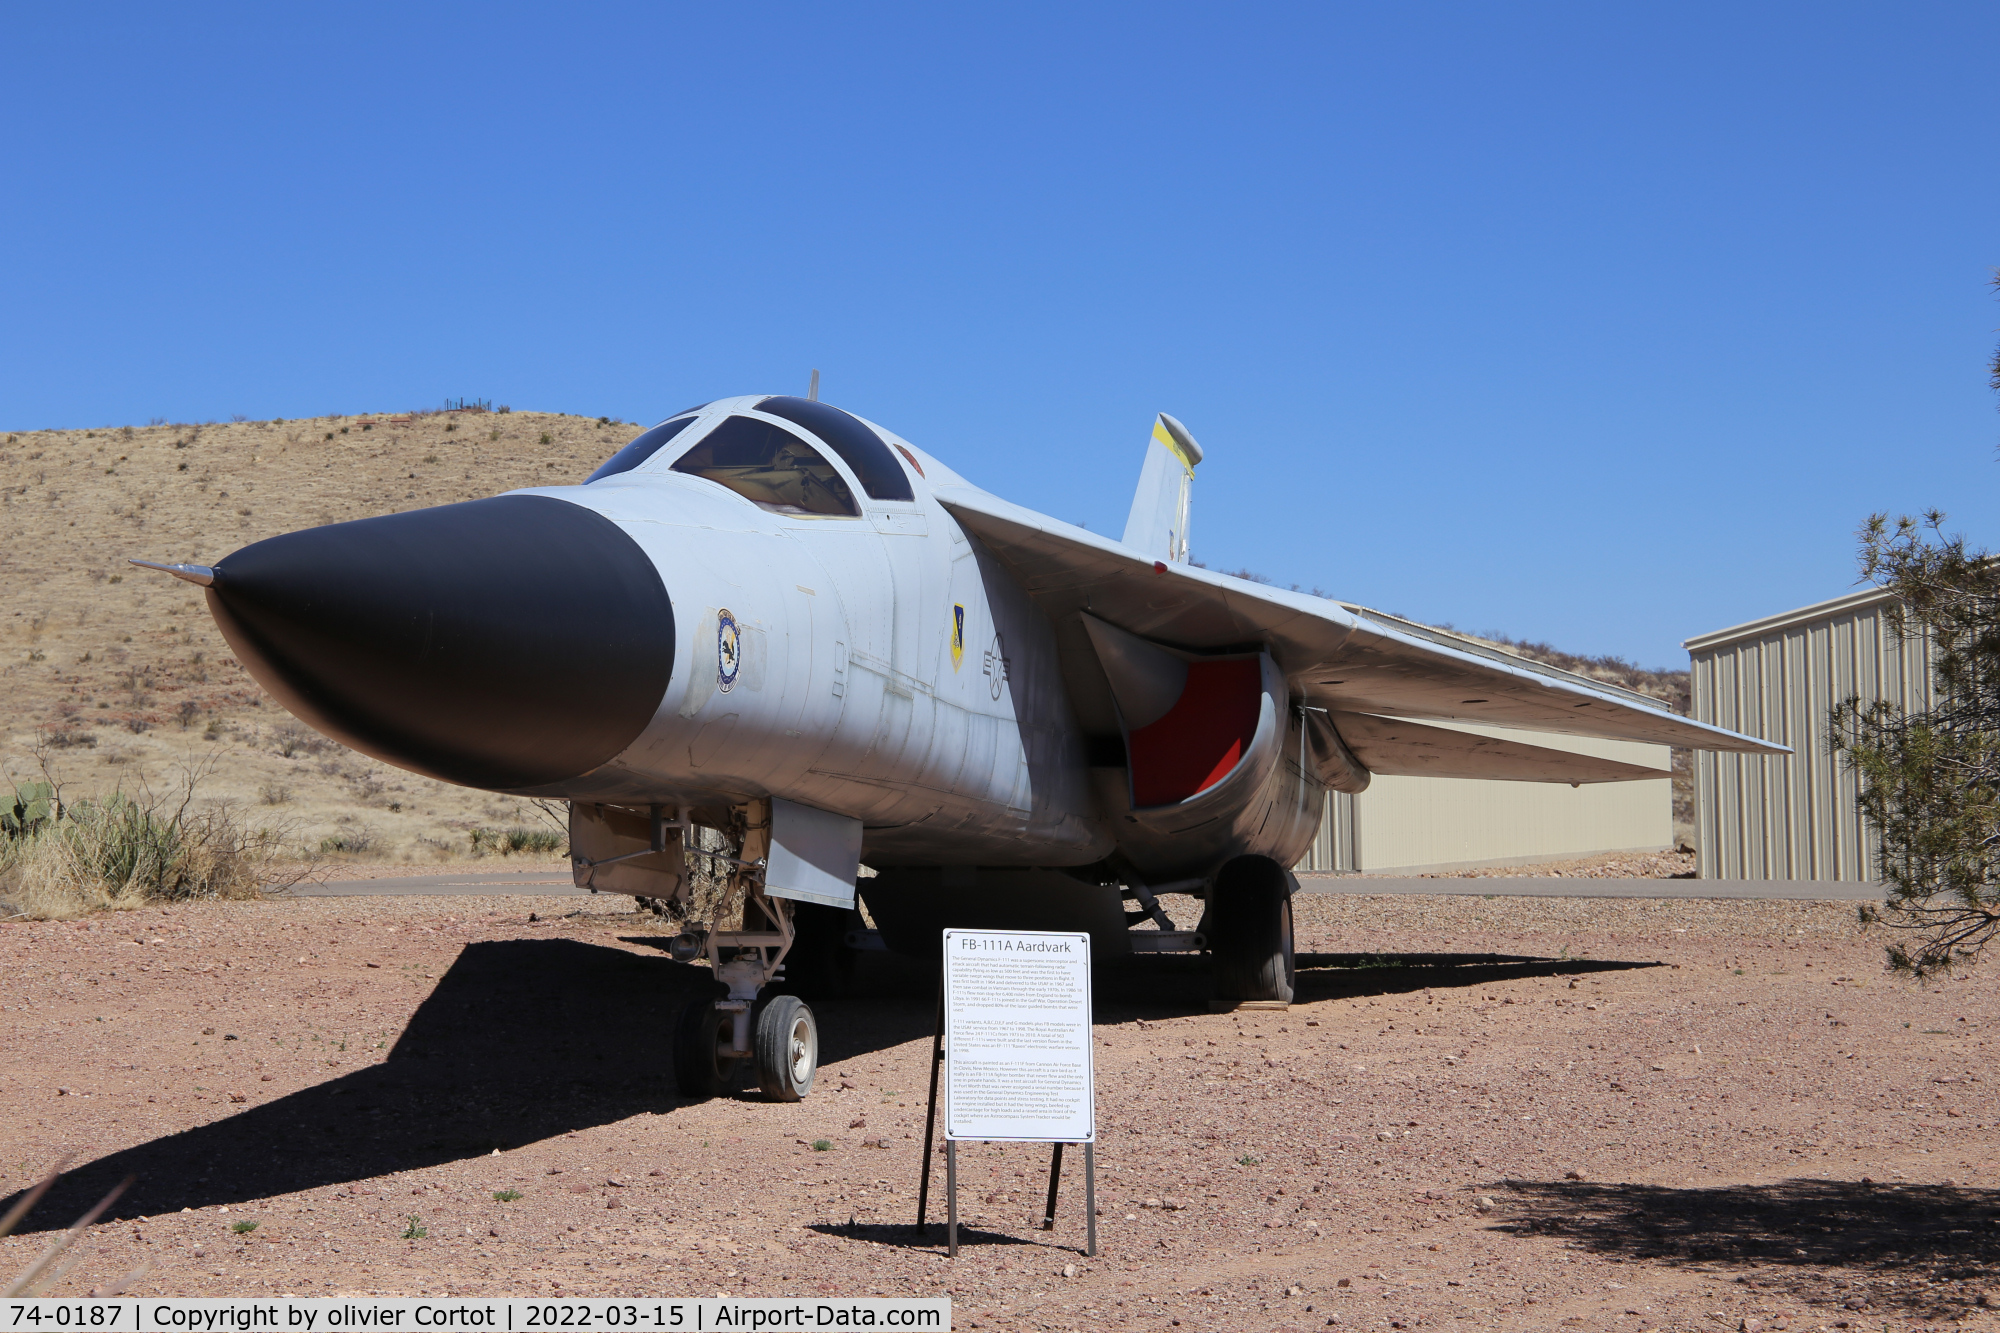 74-0187, 1974 General Dynamics F-111F Aardvark C/N E2-105, Now in wilcox